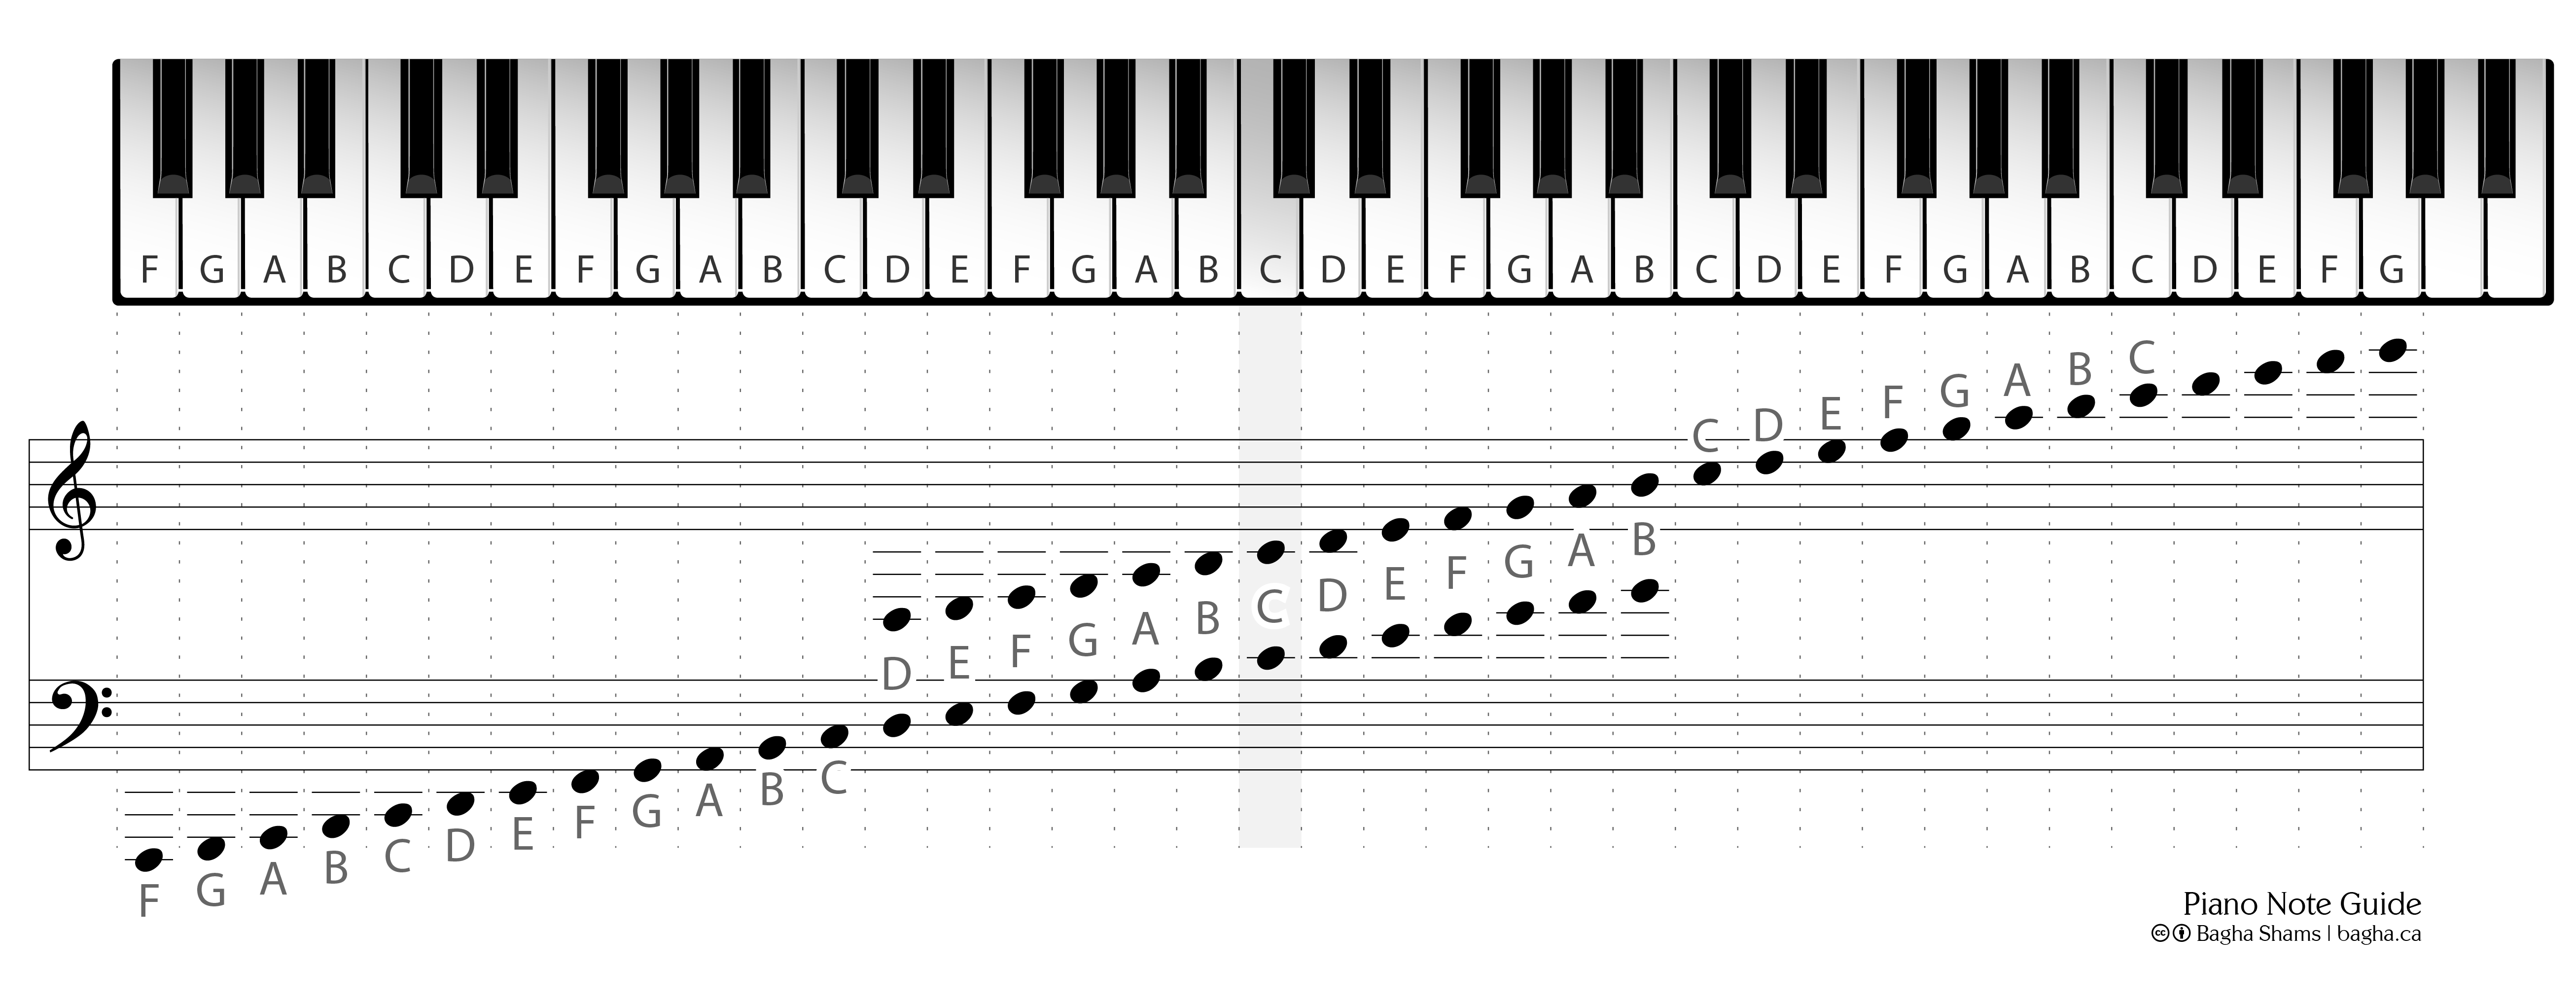 Расположение нот на пианино 88 клавиш